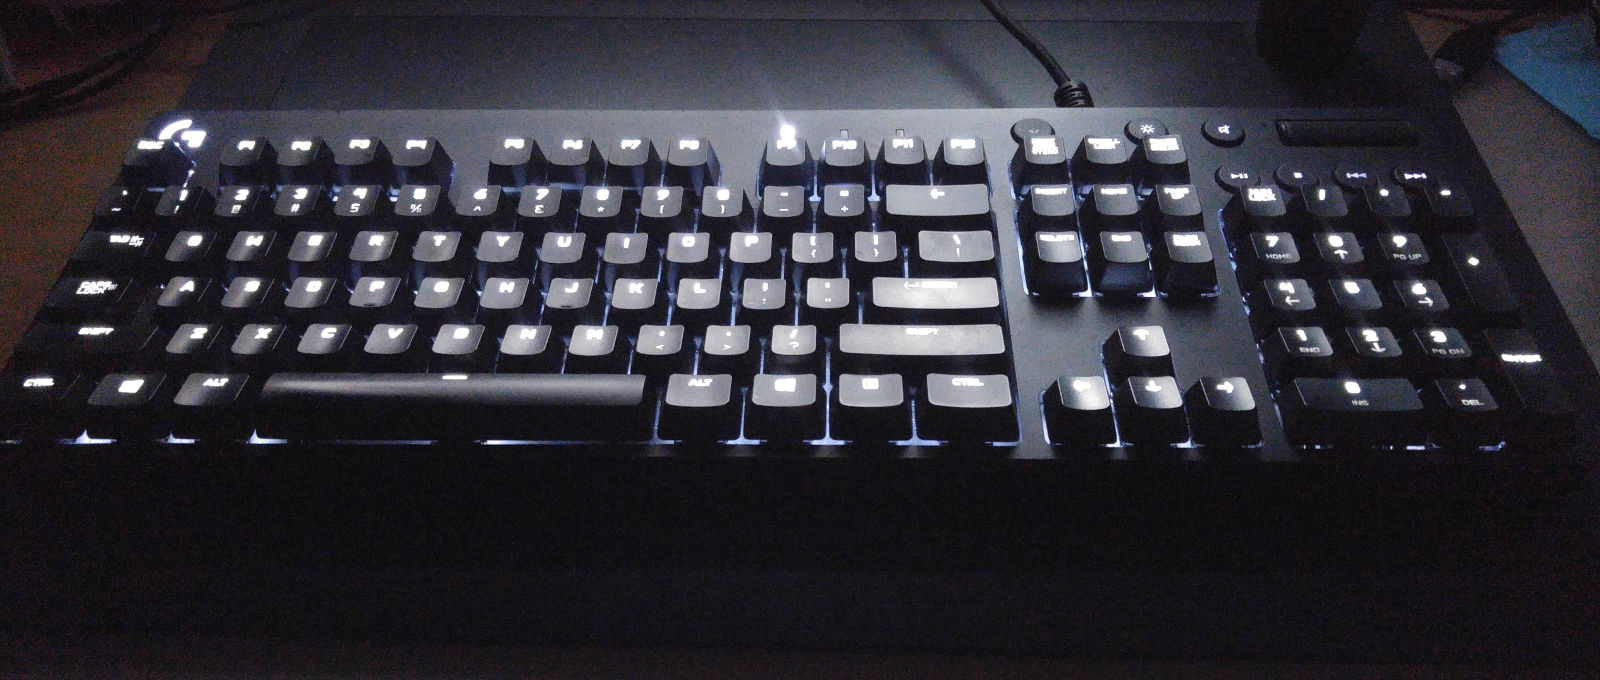 A Logitech's G610 mechanical keyboard –